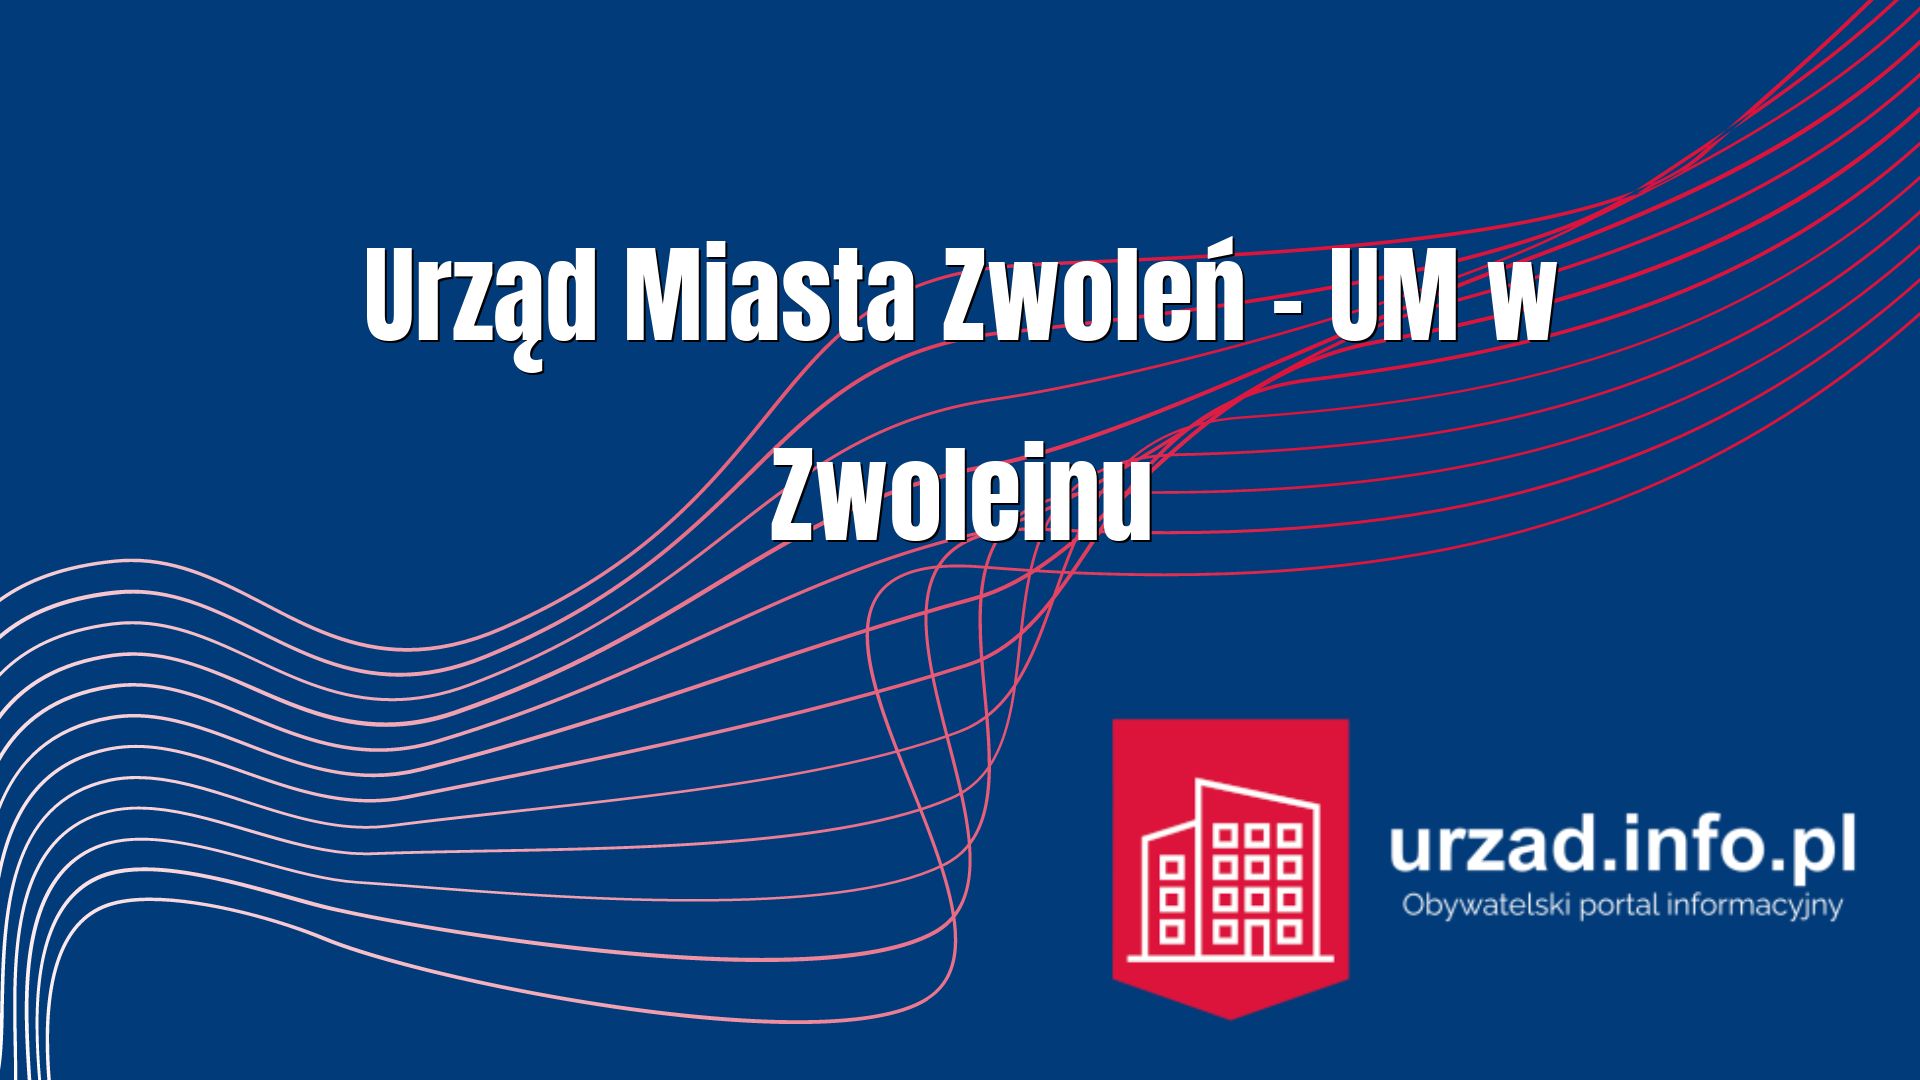 Urząd Miasta Zwoleń – UM w Zwoleinu